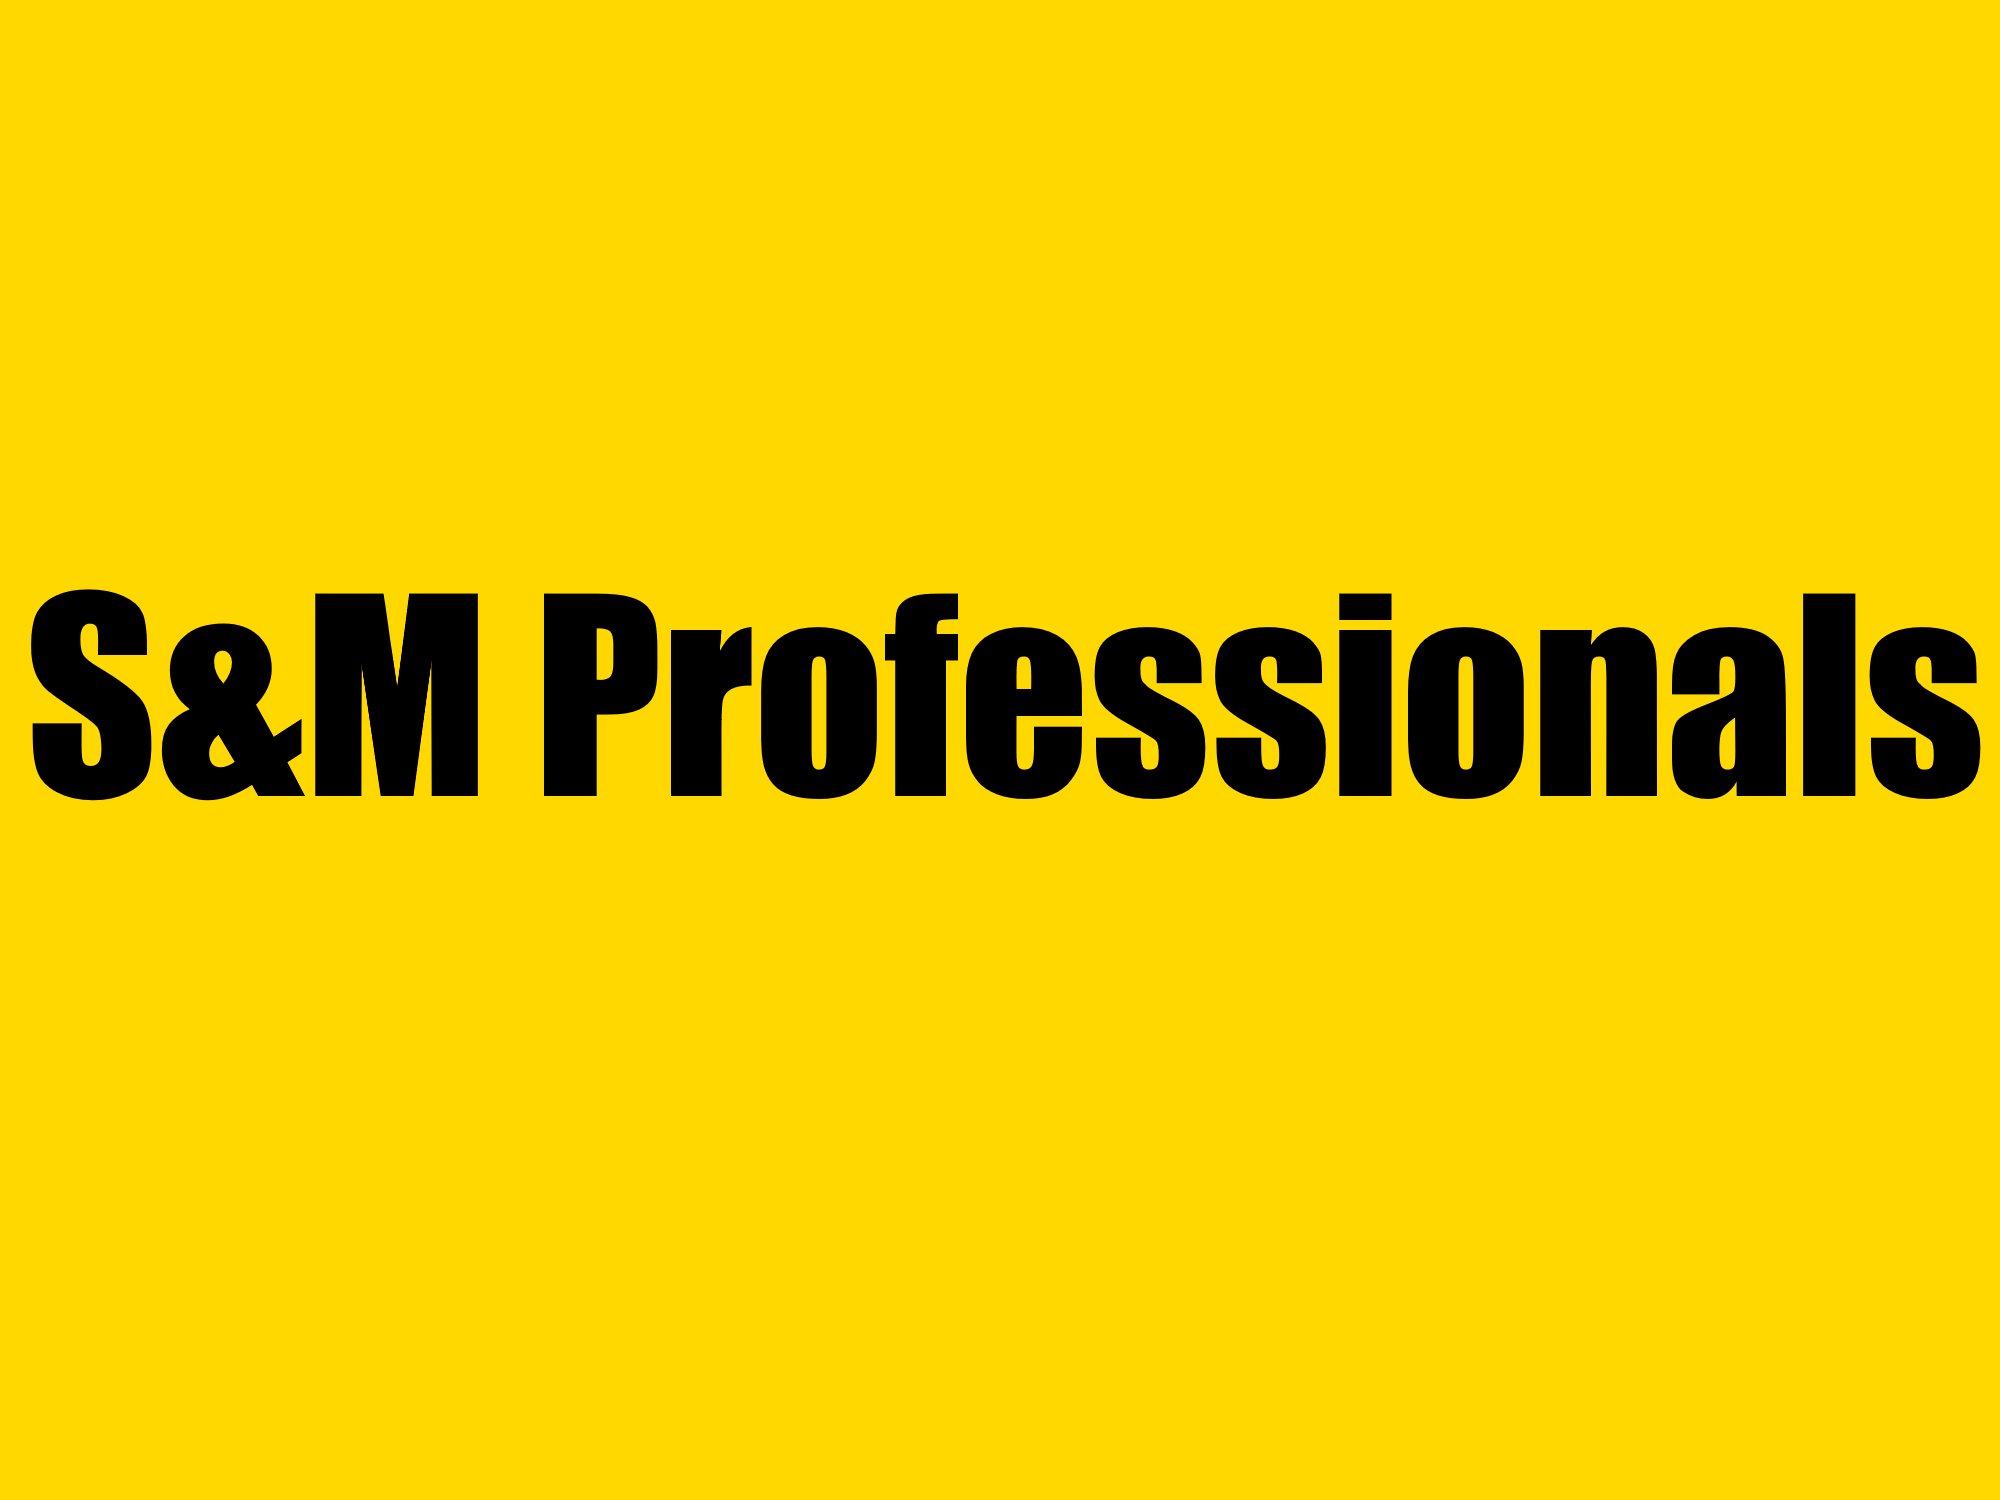 S&M Professionals